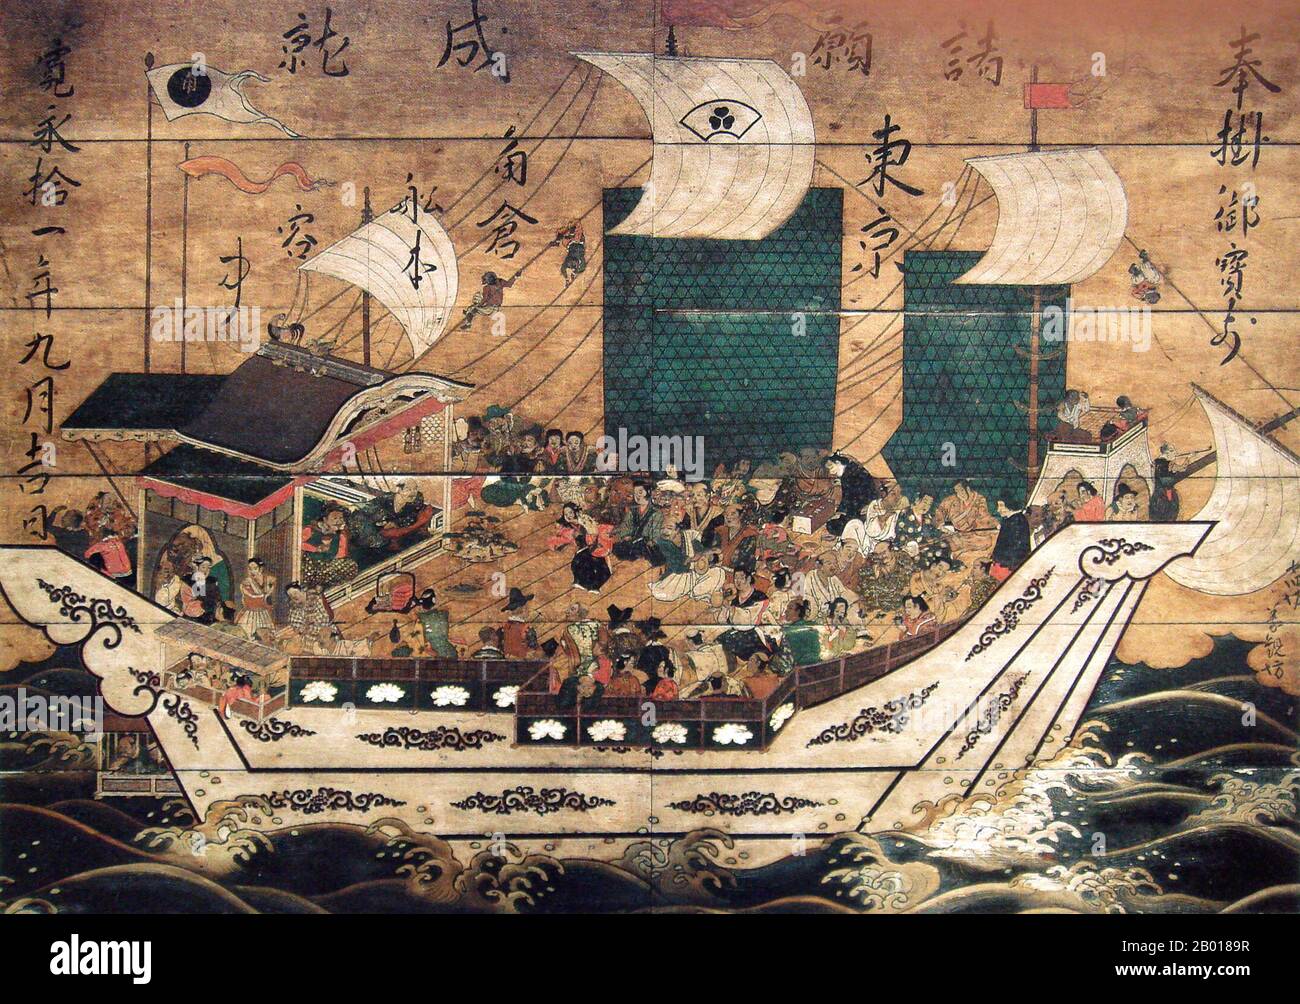 Japan: Suminokura-Rotsiegelschiff mit Ausländern. Holztafel Gemälde aus Kiyomizu-dera Tempel, Kyoto, c. 1633. Shuinsen, oder "Red Seal Ships", waren japanische bewaffnete Handelsschiffe, die mit einem rot versiegelten Patent, das vom frühen Tokugawa-Shogunat in der ersten Hälfte des 17th. Jahrhunderts ausgestellt wurde, nach südostasiatischen Häfen fuhren. Zwischen 1600 und 1635 gingen mehr als 350 japanische Schiffe im Rahmen dieses Genehmigungssystems nach Übersee. Japanische Händler exportierten hauptsächlich Silber, Diamanten, Kupfer, Schwerter und andere Artefakte und importierten chinesische Seide sowie einige südostasiatische Produkte (wie Zucker und Hirschhäute). Stockfoto